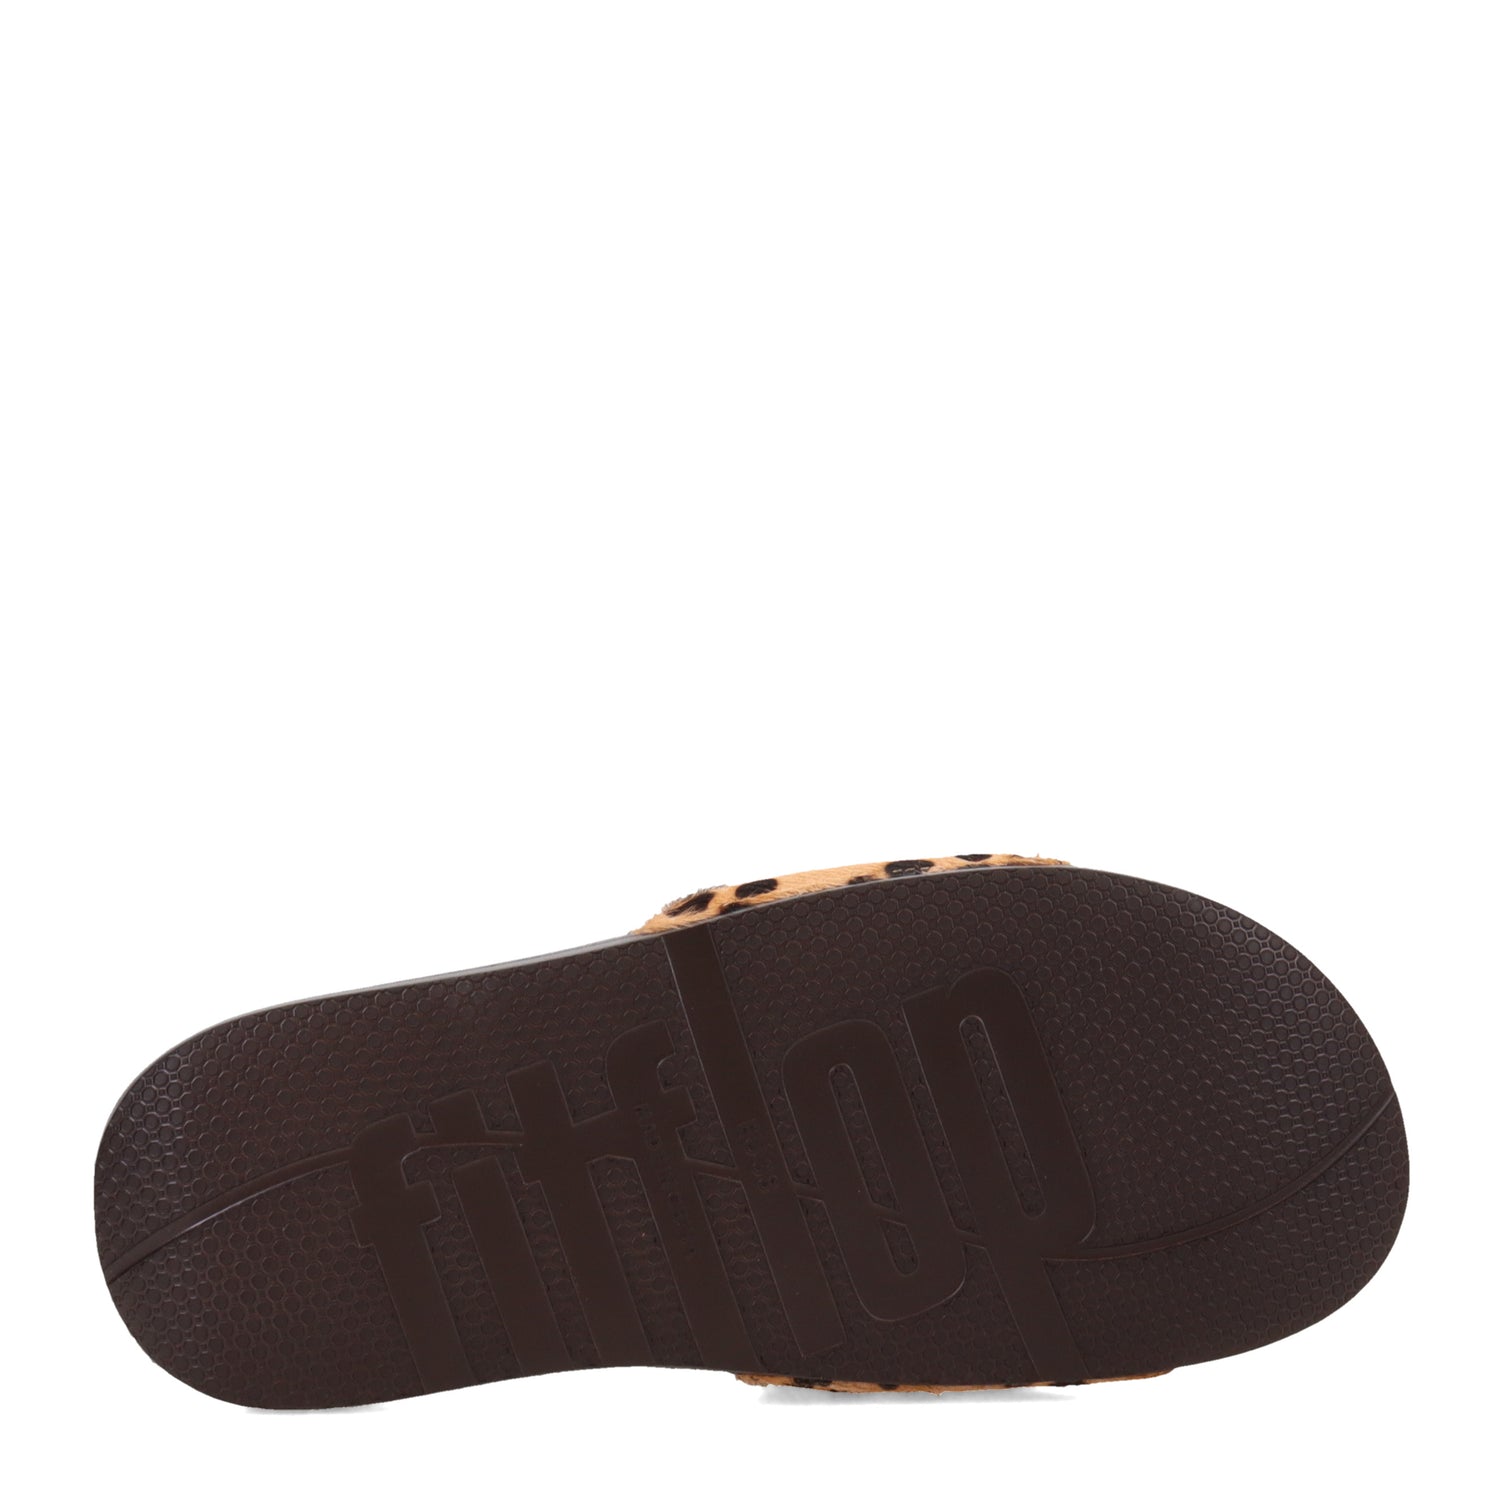 Peltz Shoes  Women's FitFlop iQushion Slide Sandal Leopard FE2-322